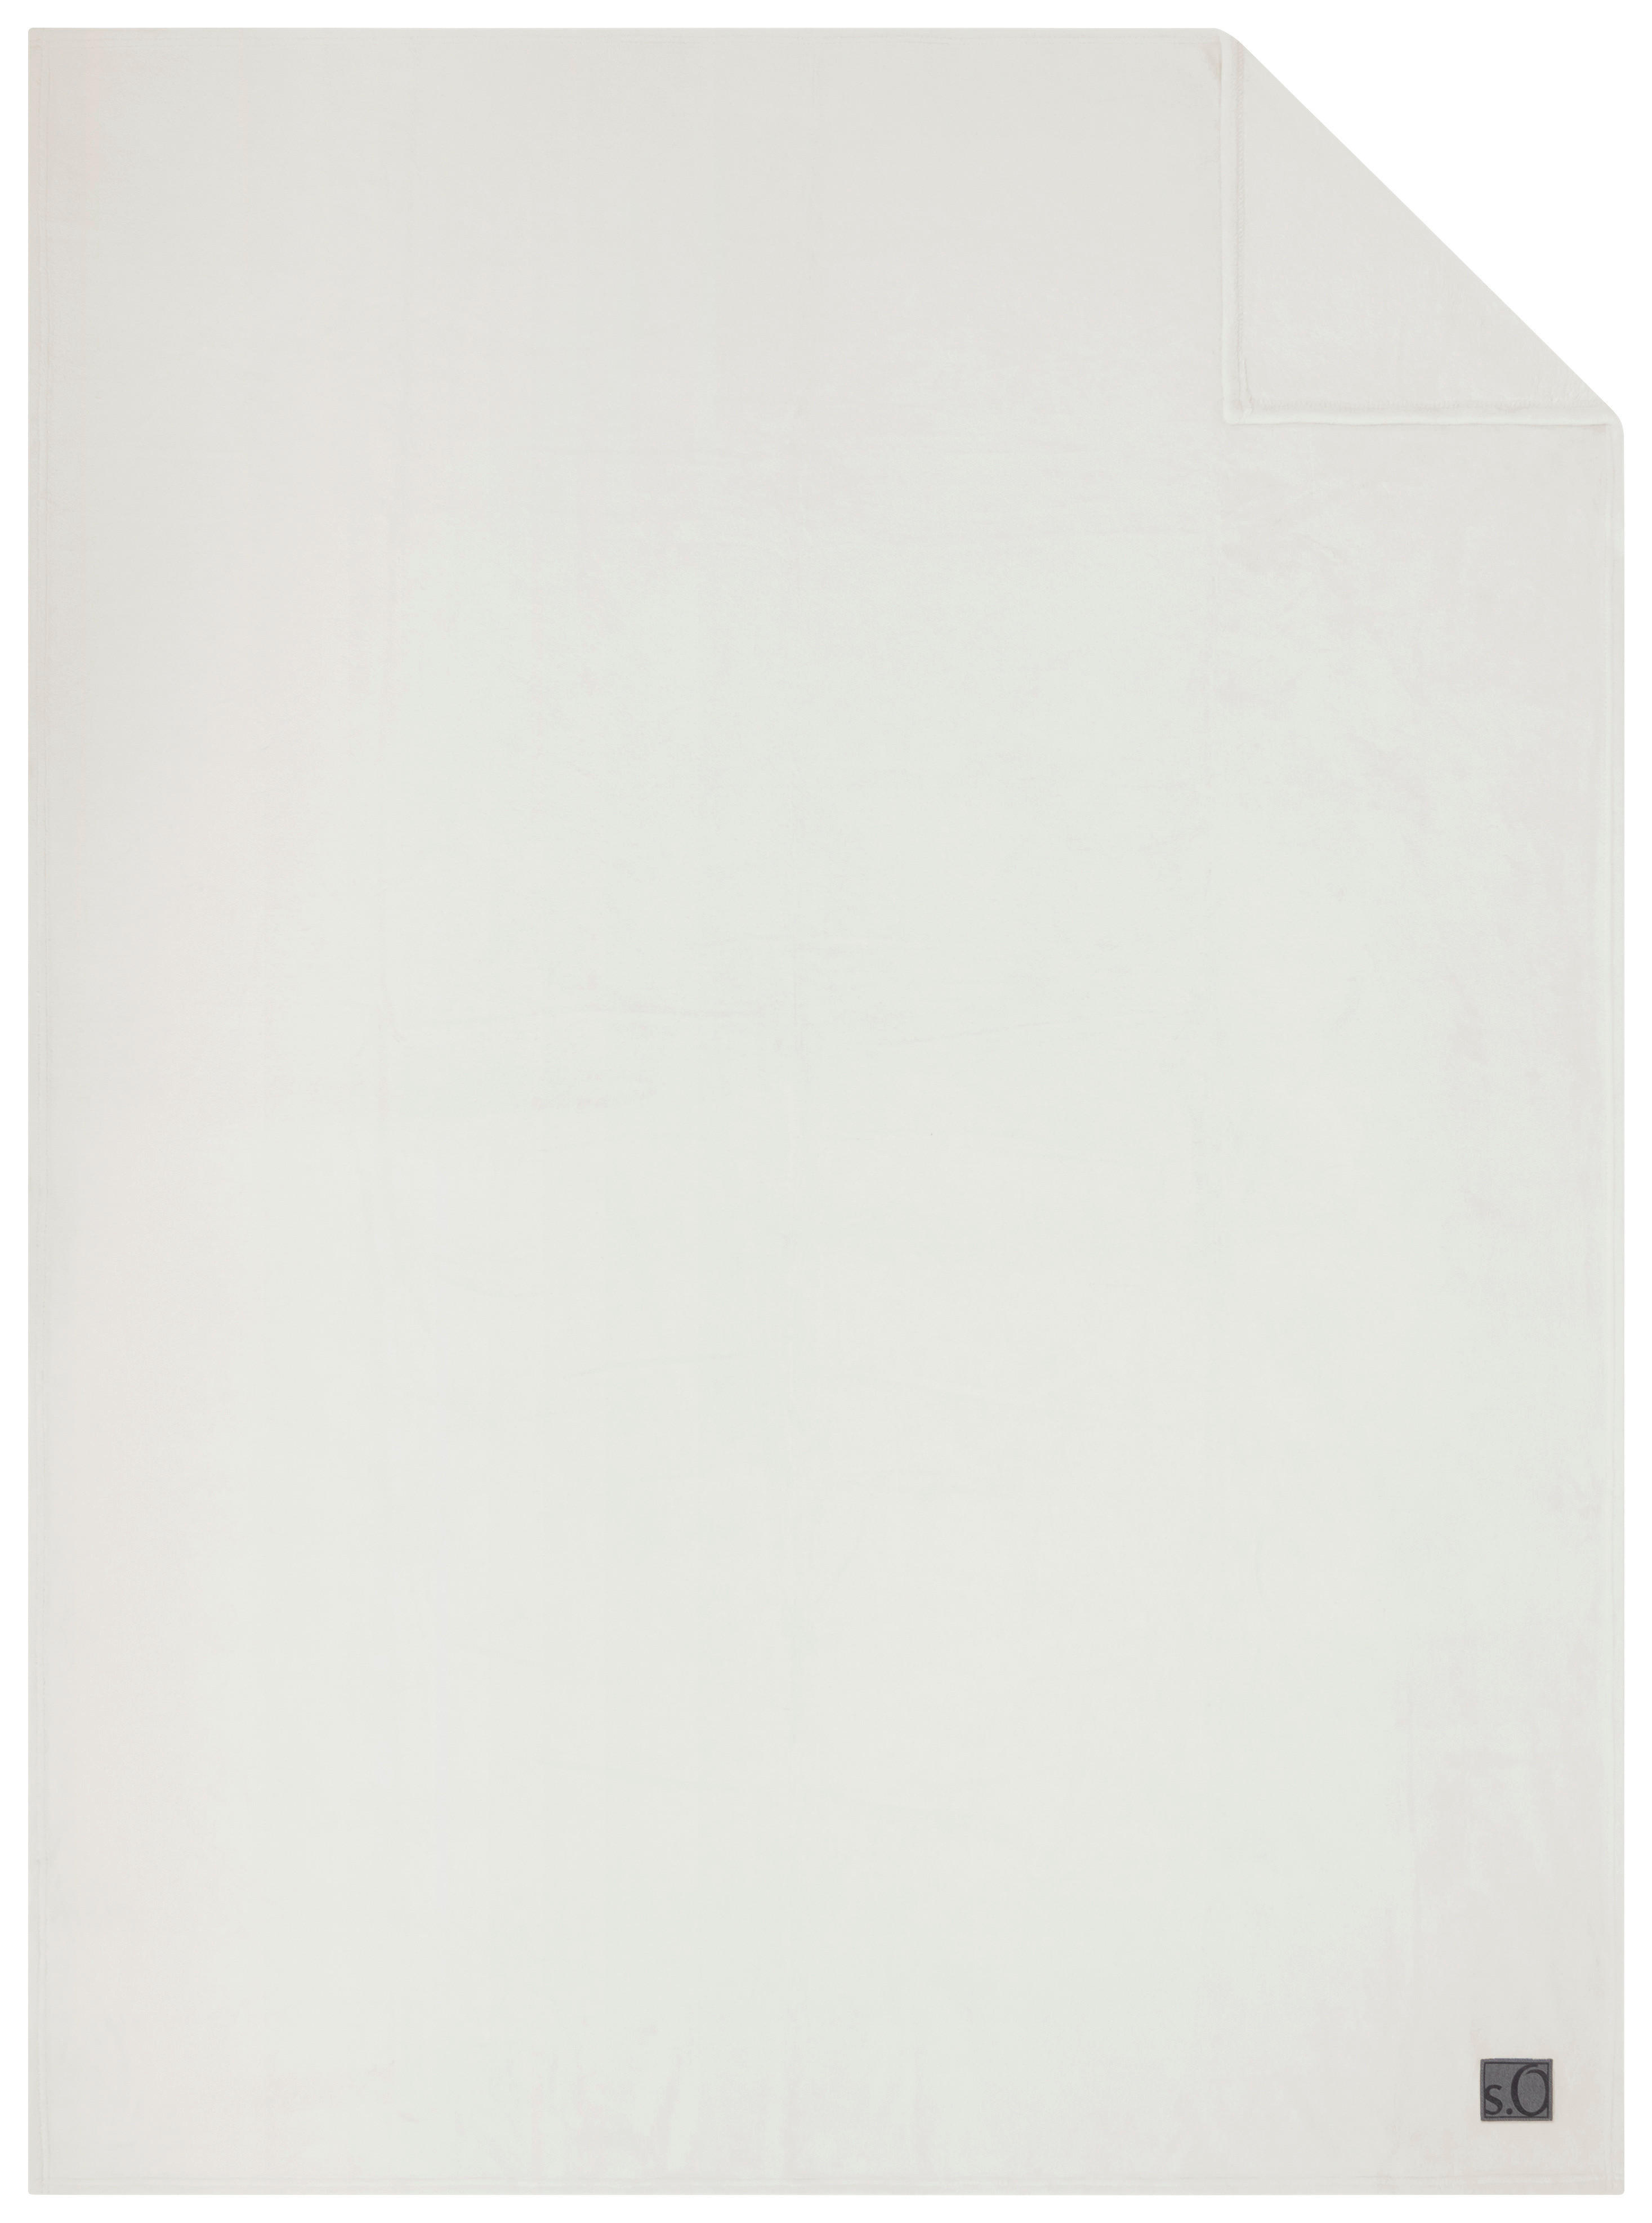 WOHNDECKE Kuschelsoft 150/200 cm  - Weiß, Basics, Textil (150/200cm) - S. Oliver